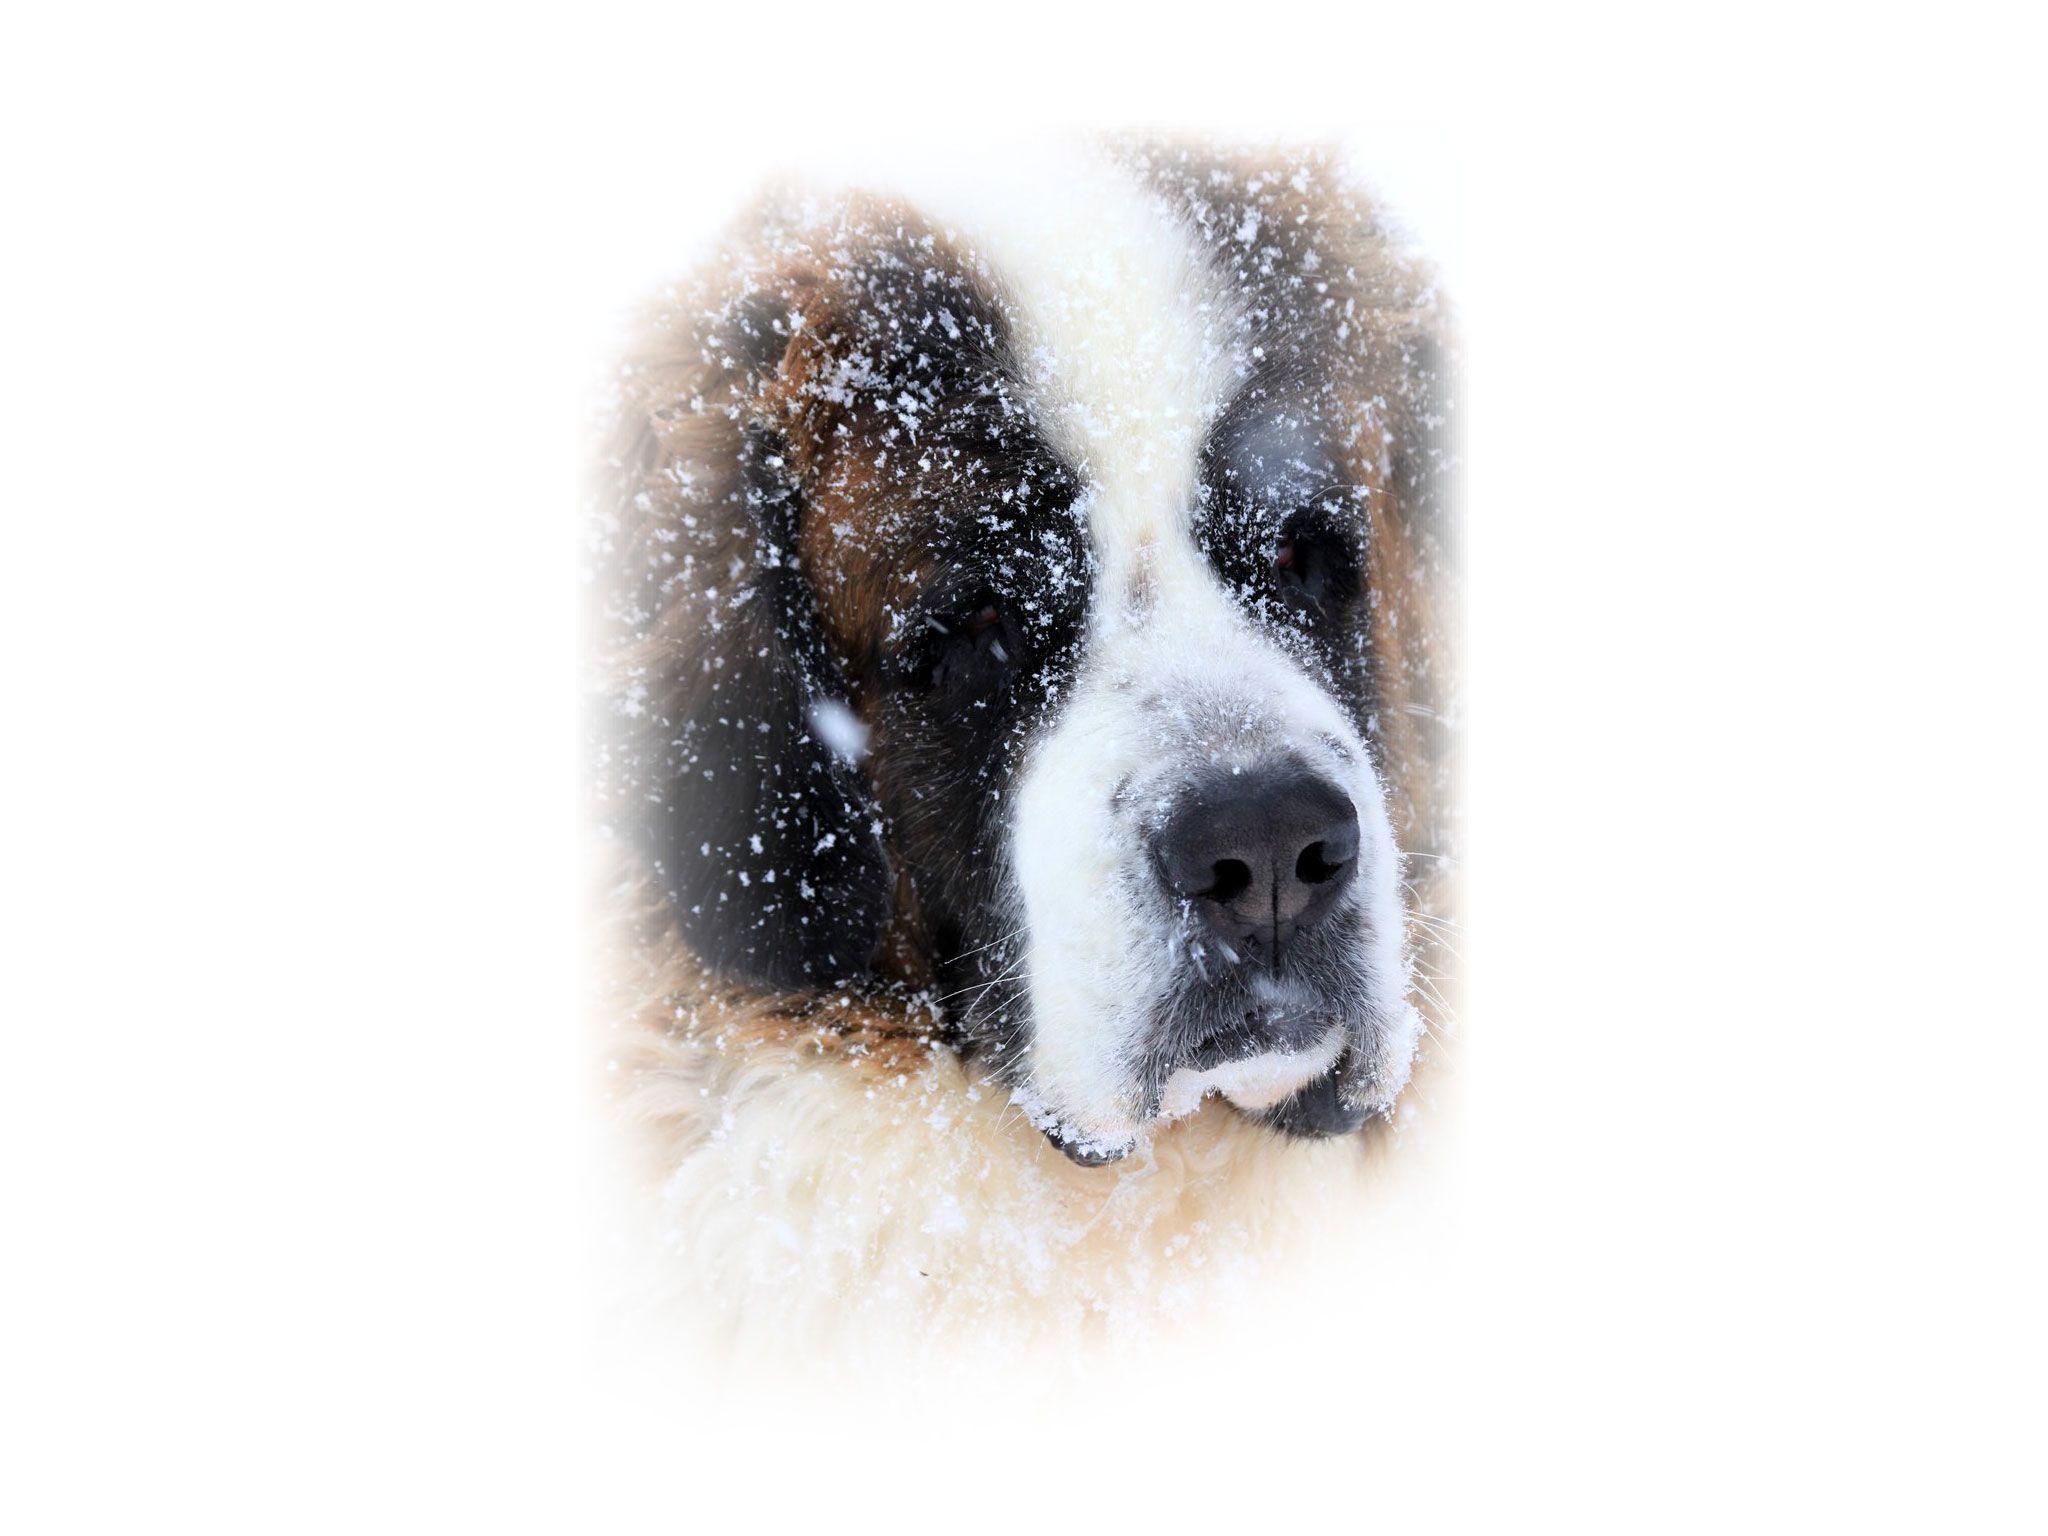 Saint bernard snow rescue dog wallpaper